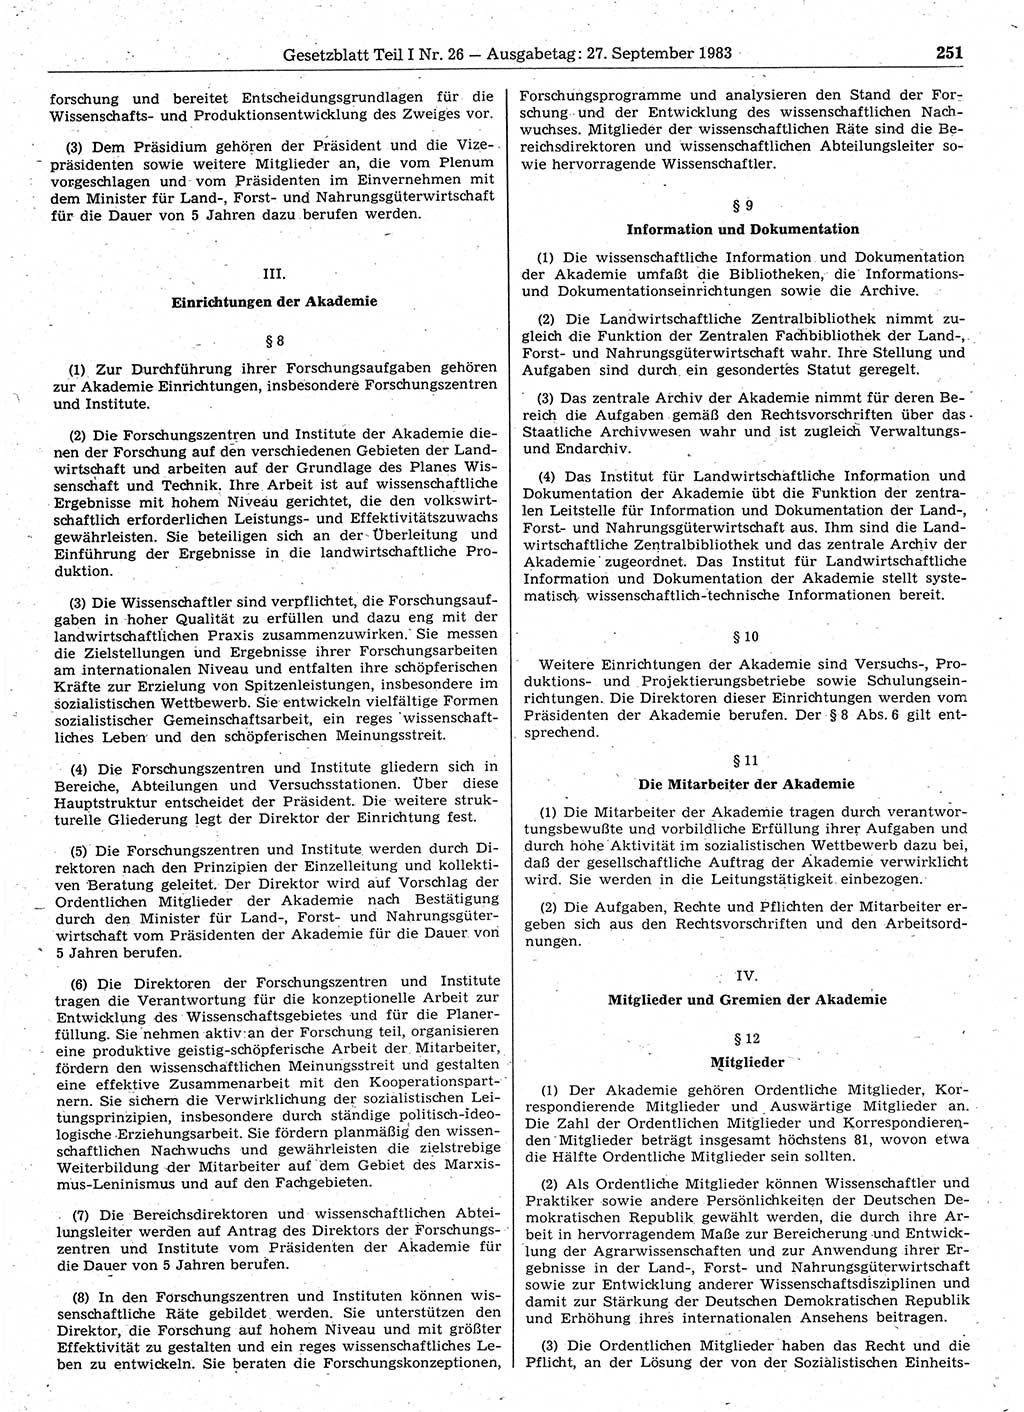 Gesetzblatt (GBl.) der Deutschen Demokratischen Republik (DDR) Teil Ⅰ 1983, Seite 251 (GBl. DDR Ⅰ 1983, S. 251)